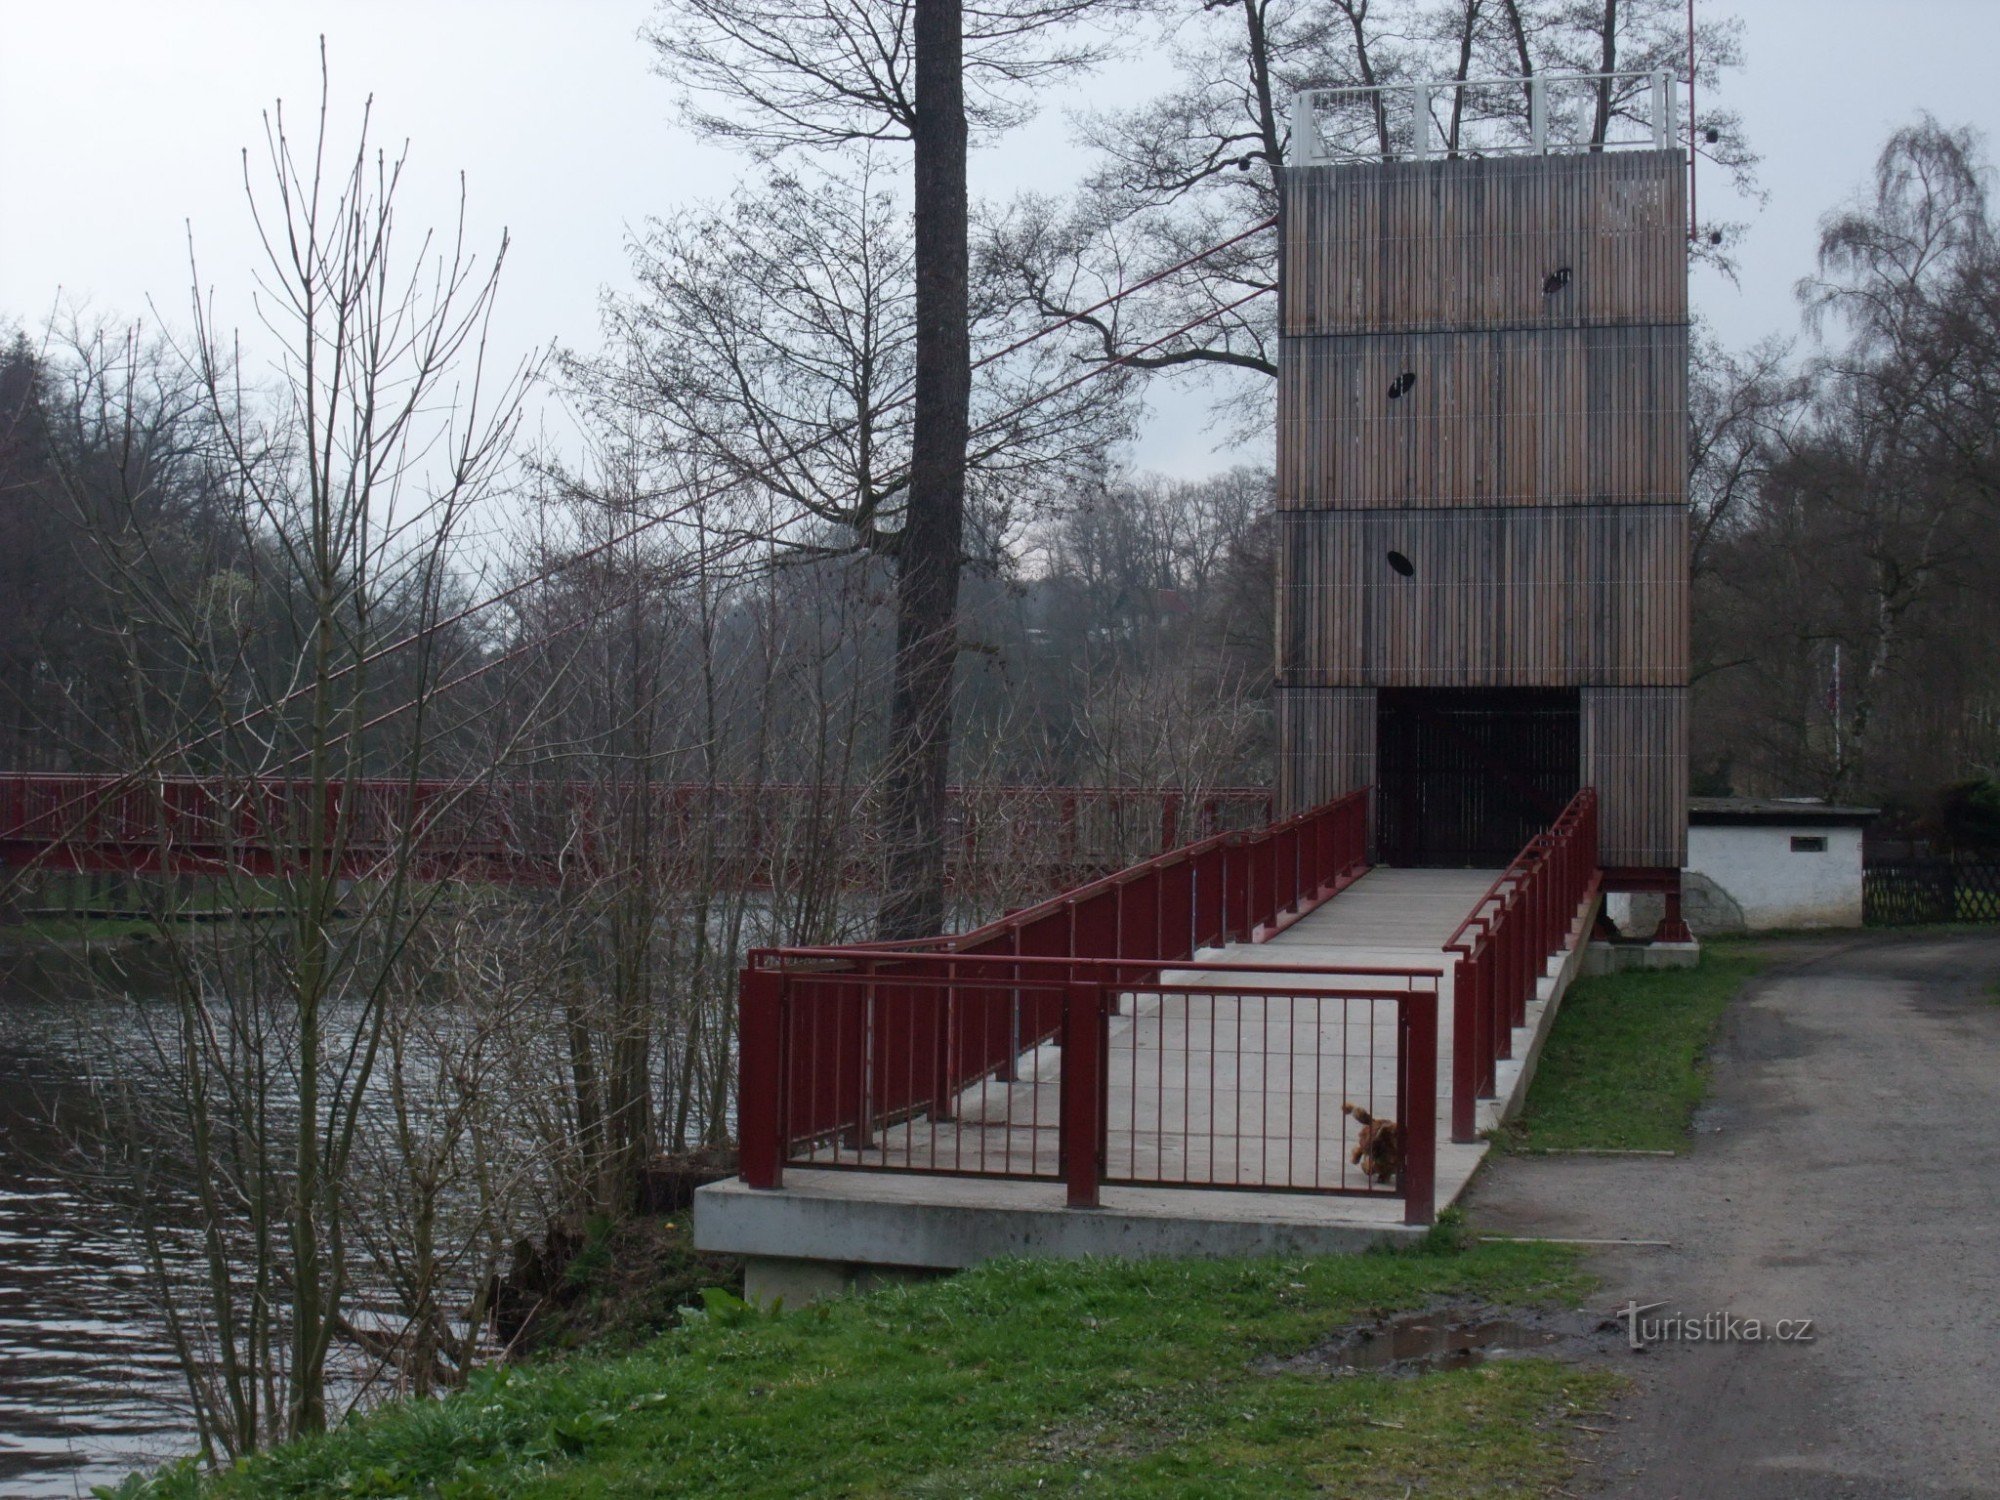 Cầu đi bộ Vávra ở Cheb